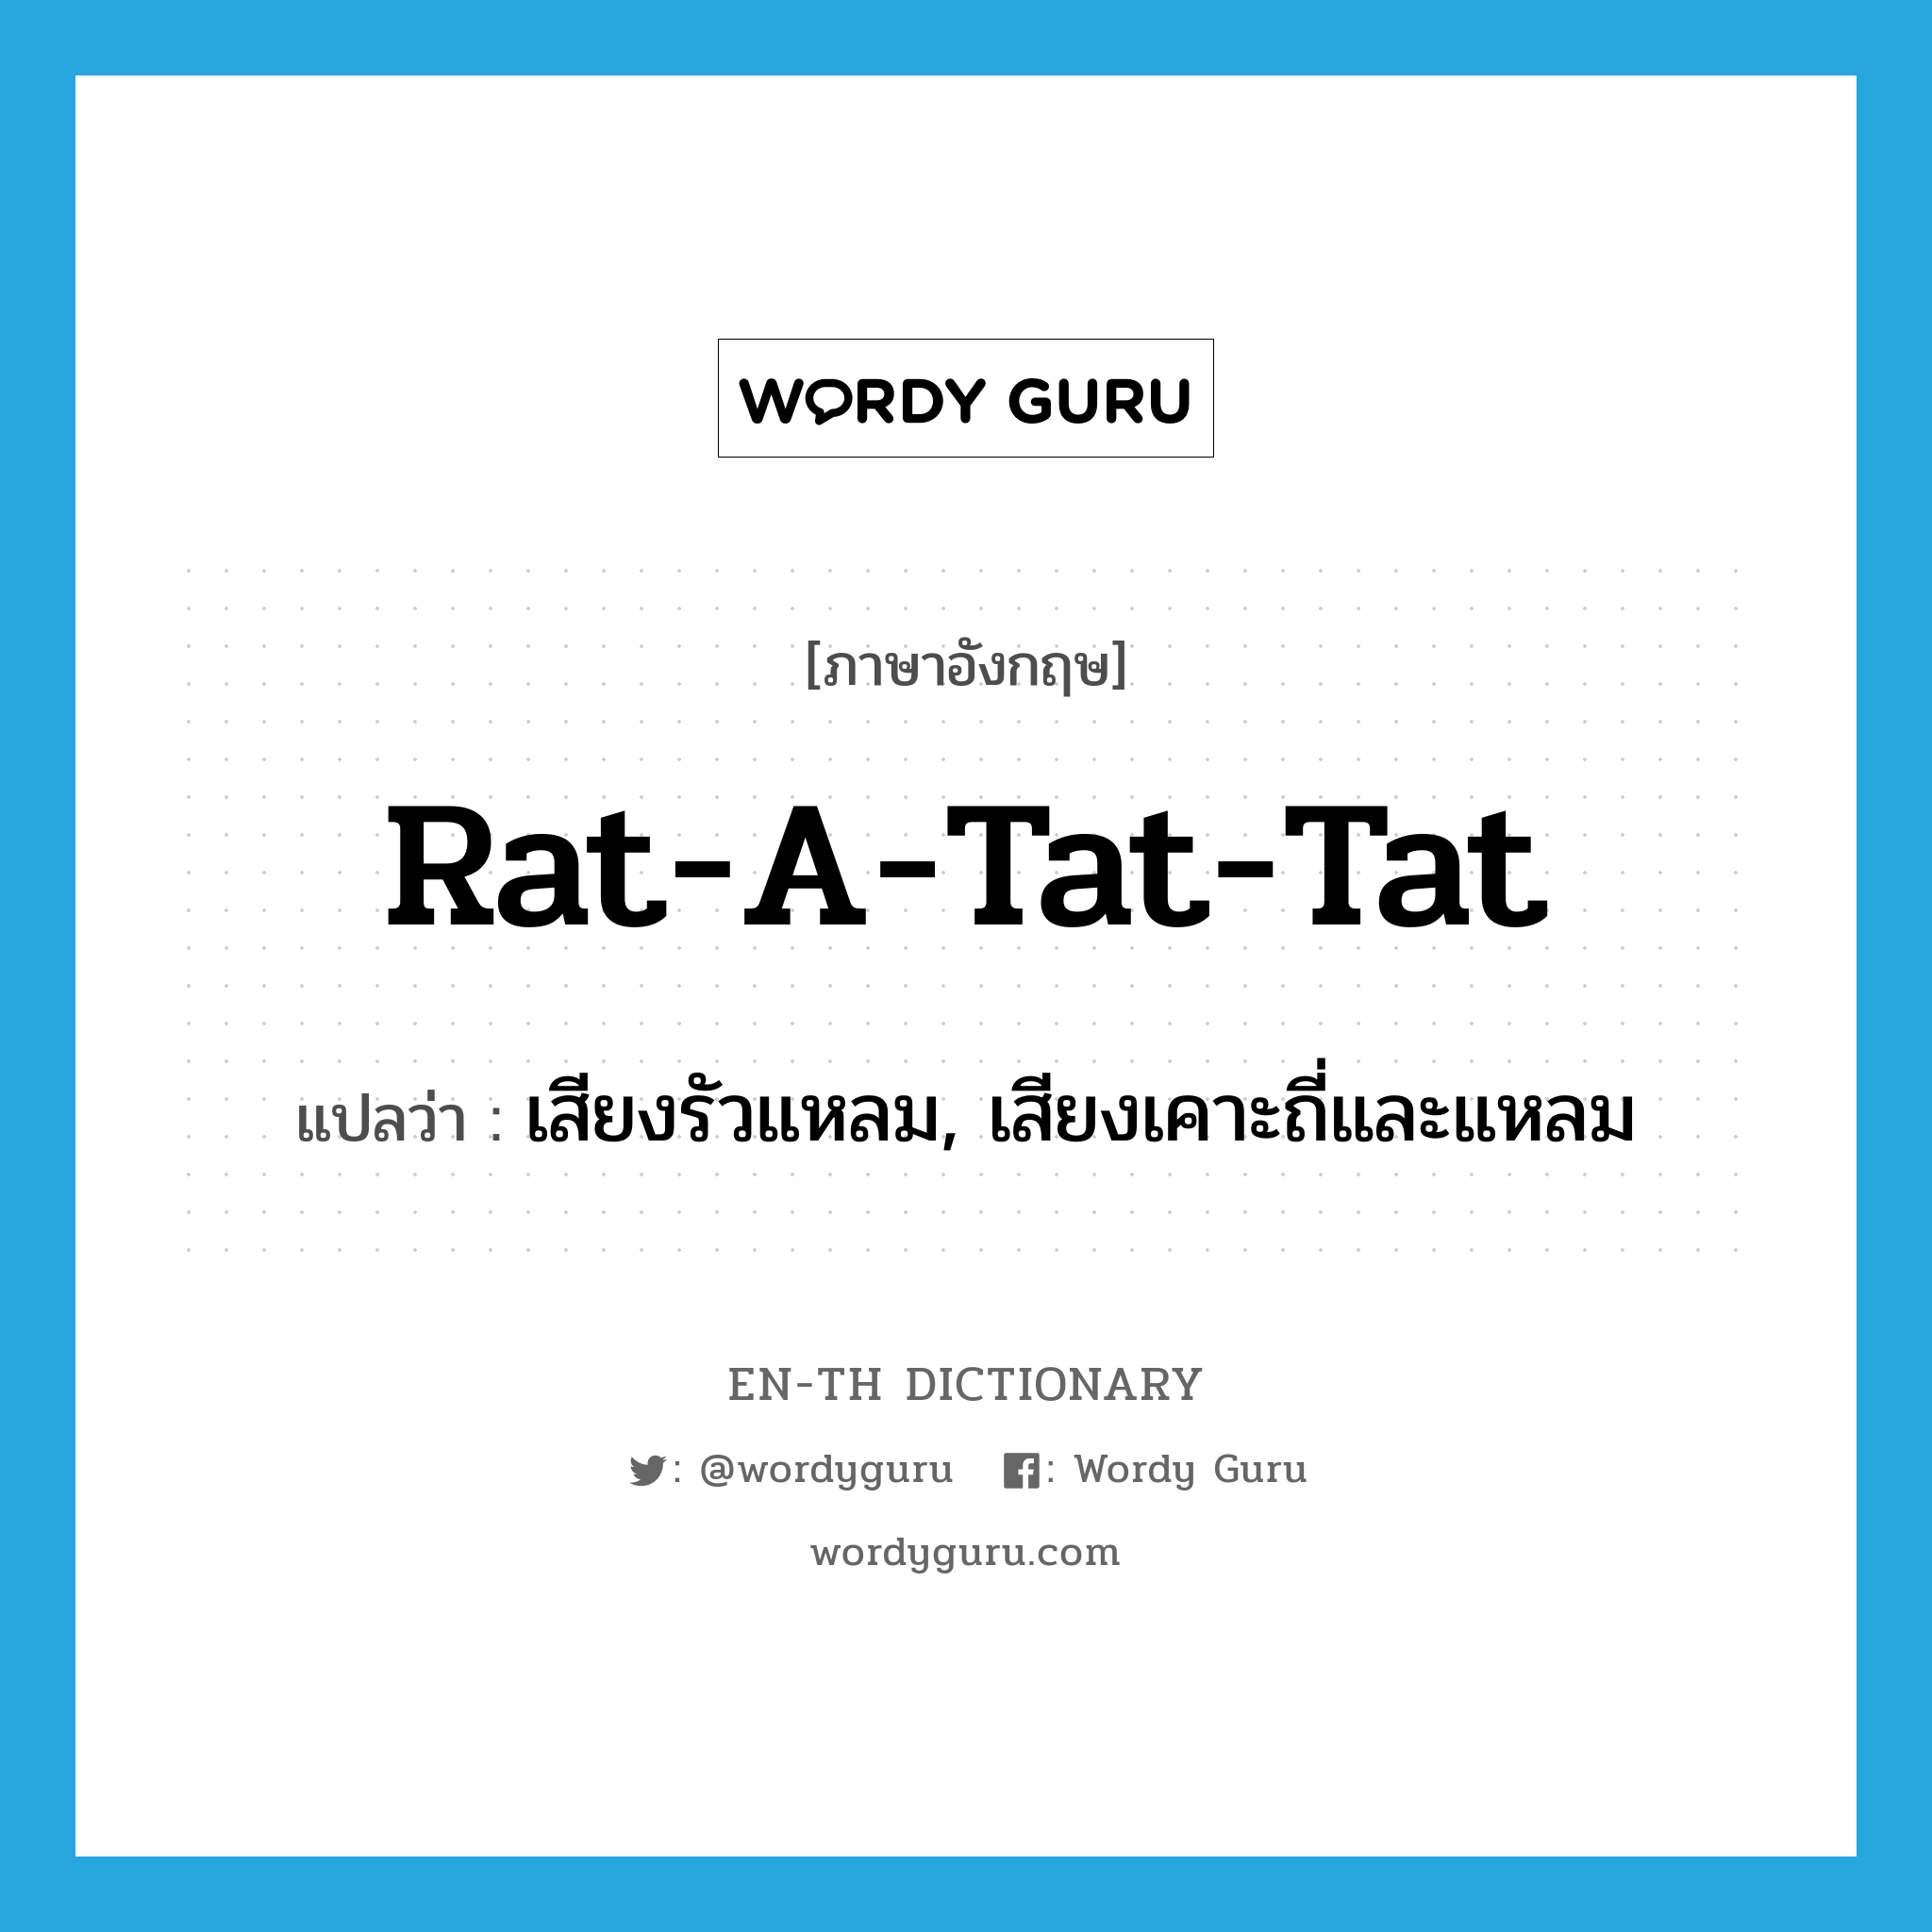 เสียงรัวแหลม, เสียงเคาะถี่และแหลม ภาษาอังกฤษ?, คำศัพท์ภาษาอังกฤษ เสียงรัวแหลม, เสียงเคาะถี่และแหลม แปลว่า rat-a-tat-tat ประเภท N หมวด N